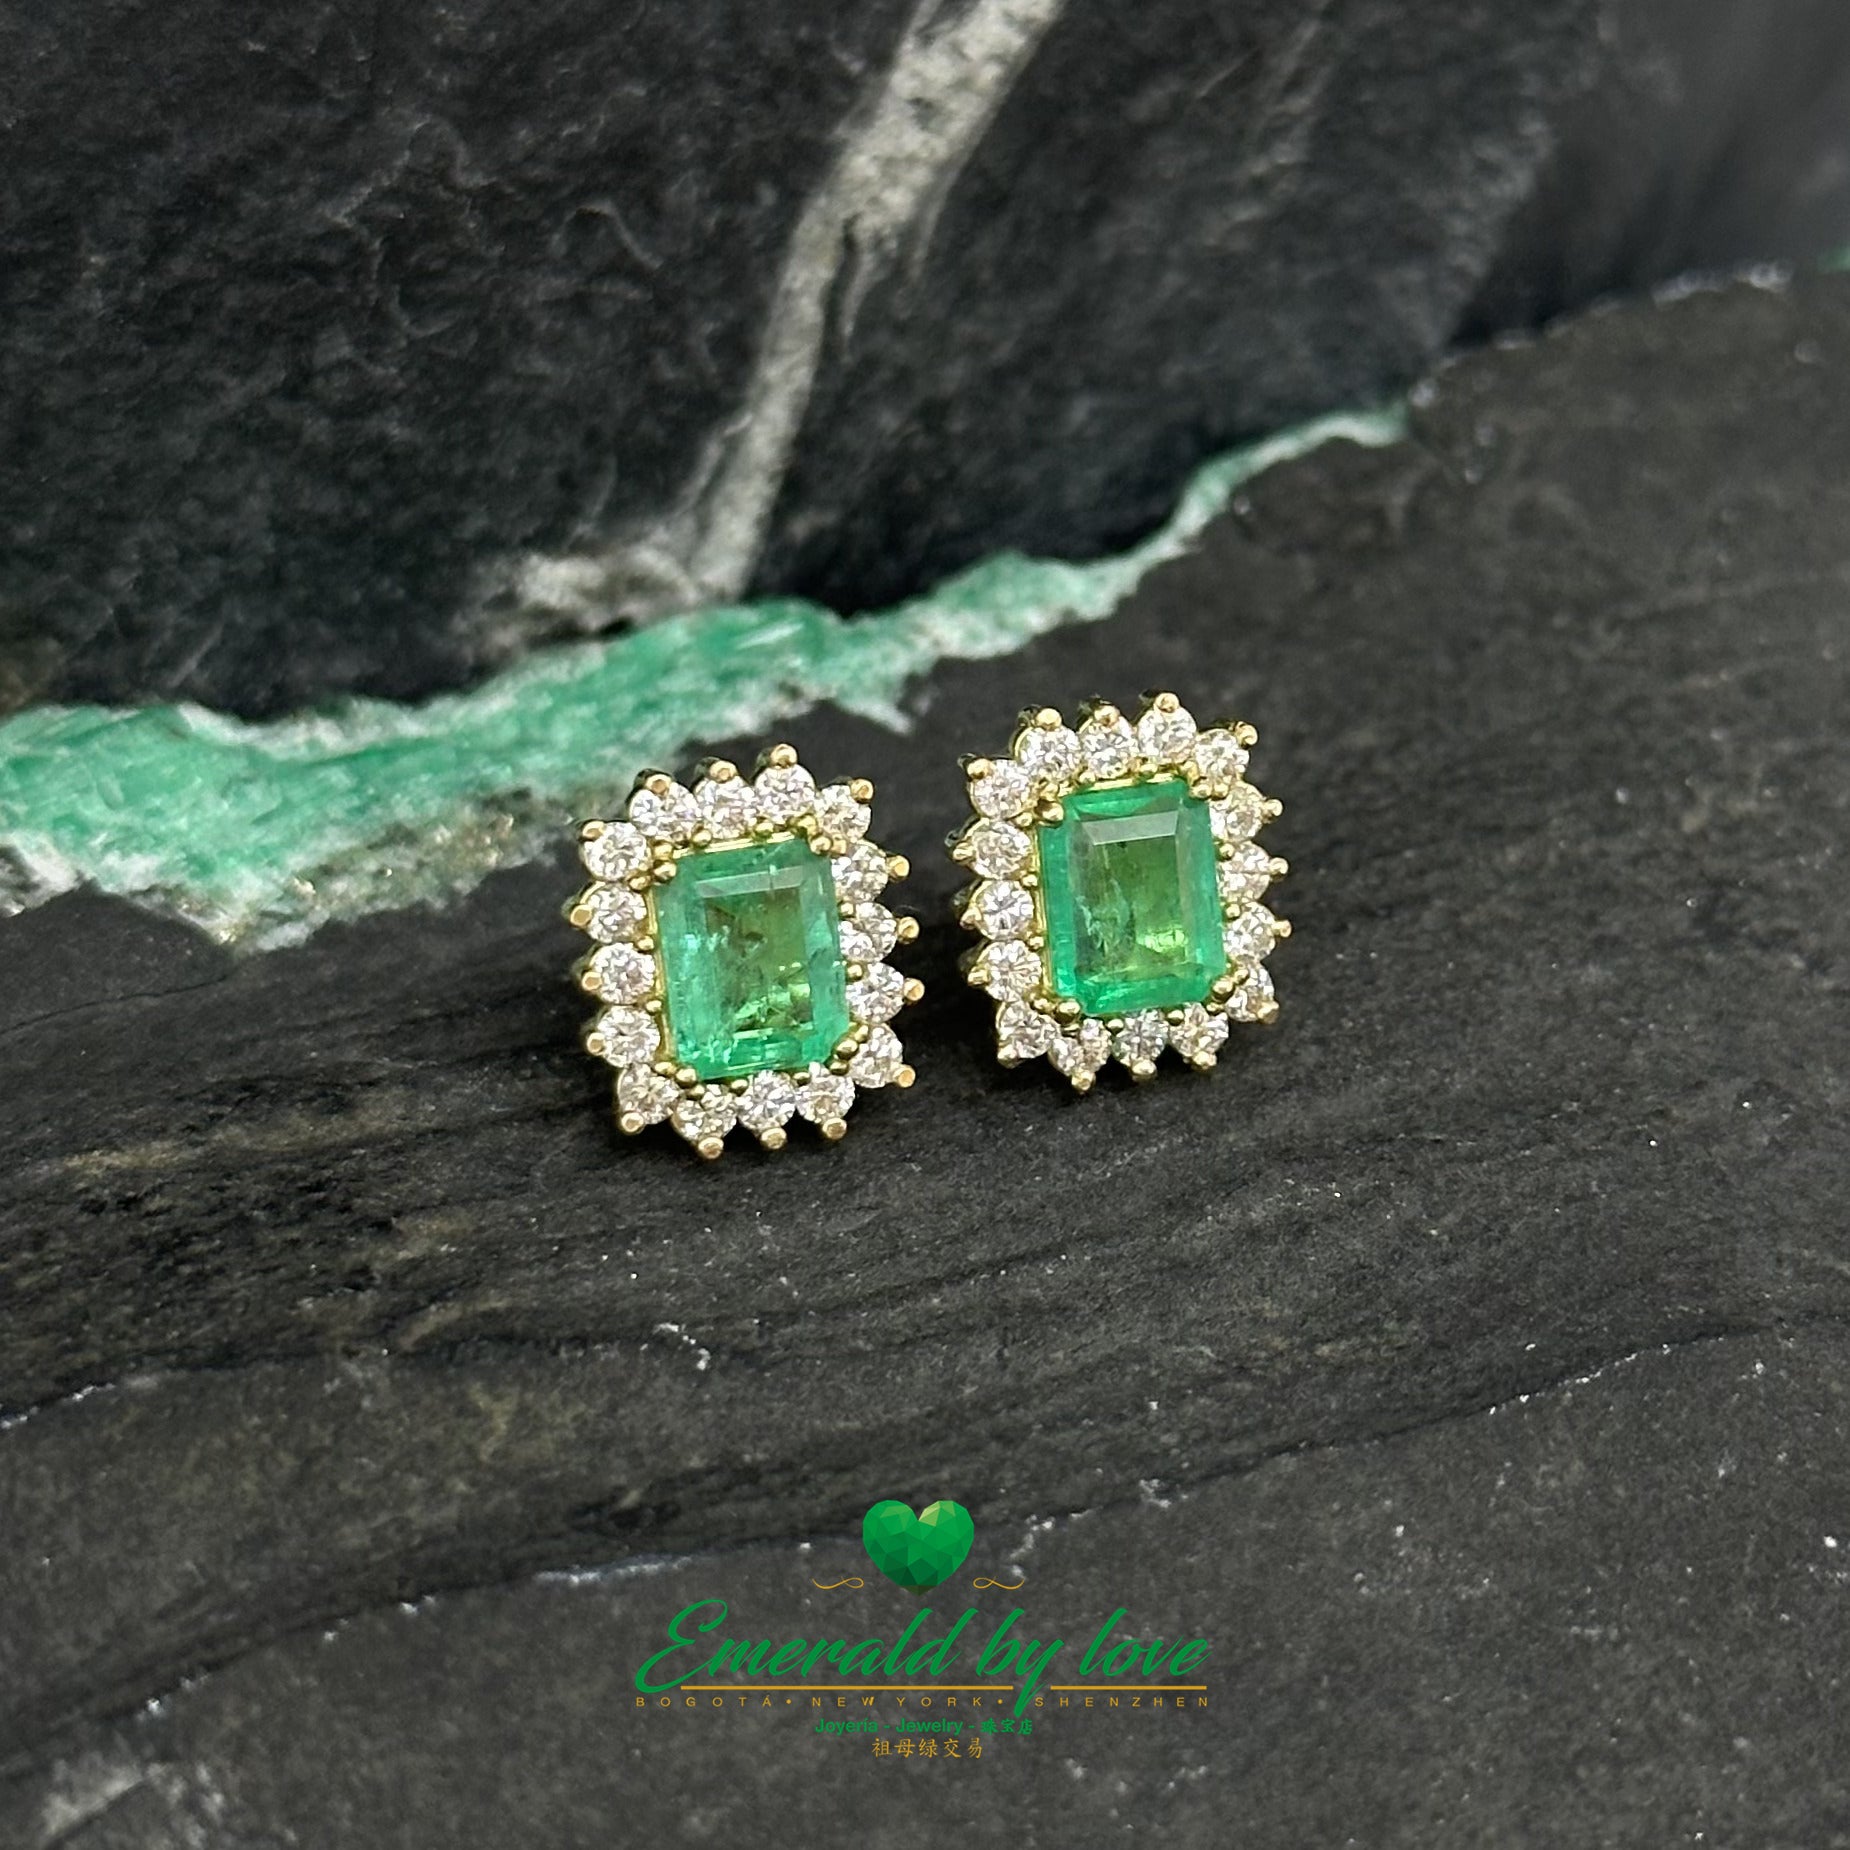 Aretes de Esmeralda colombiana talla marquesa y diamantes: Exquisitos cristales rectangulares